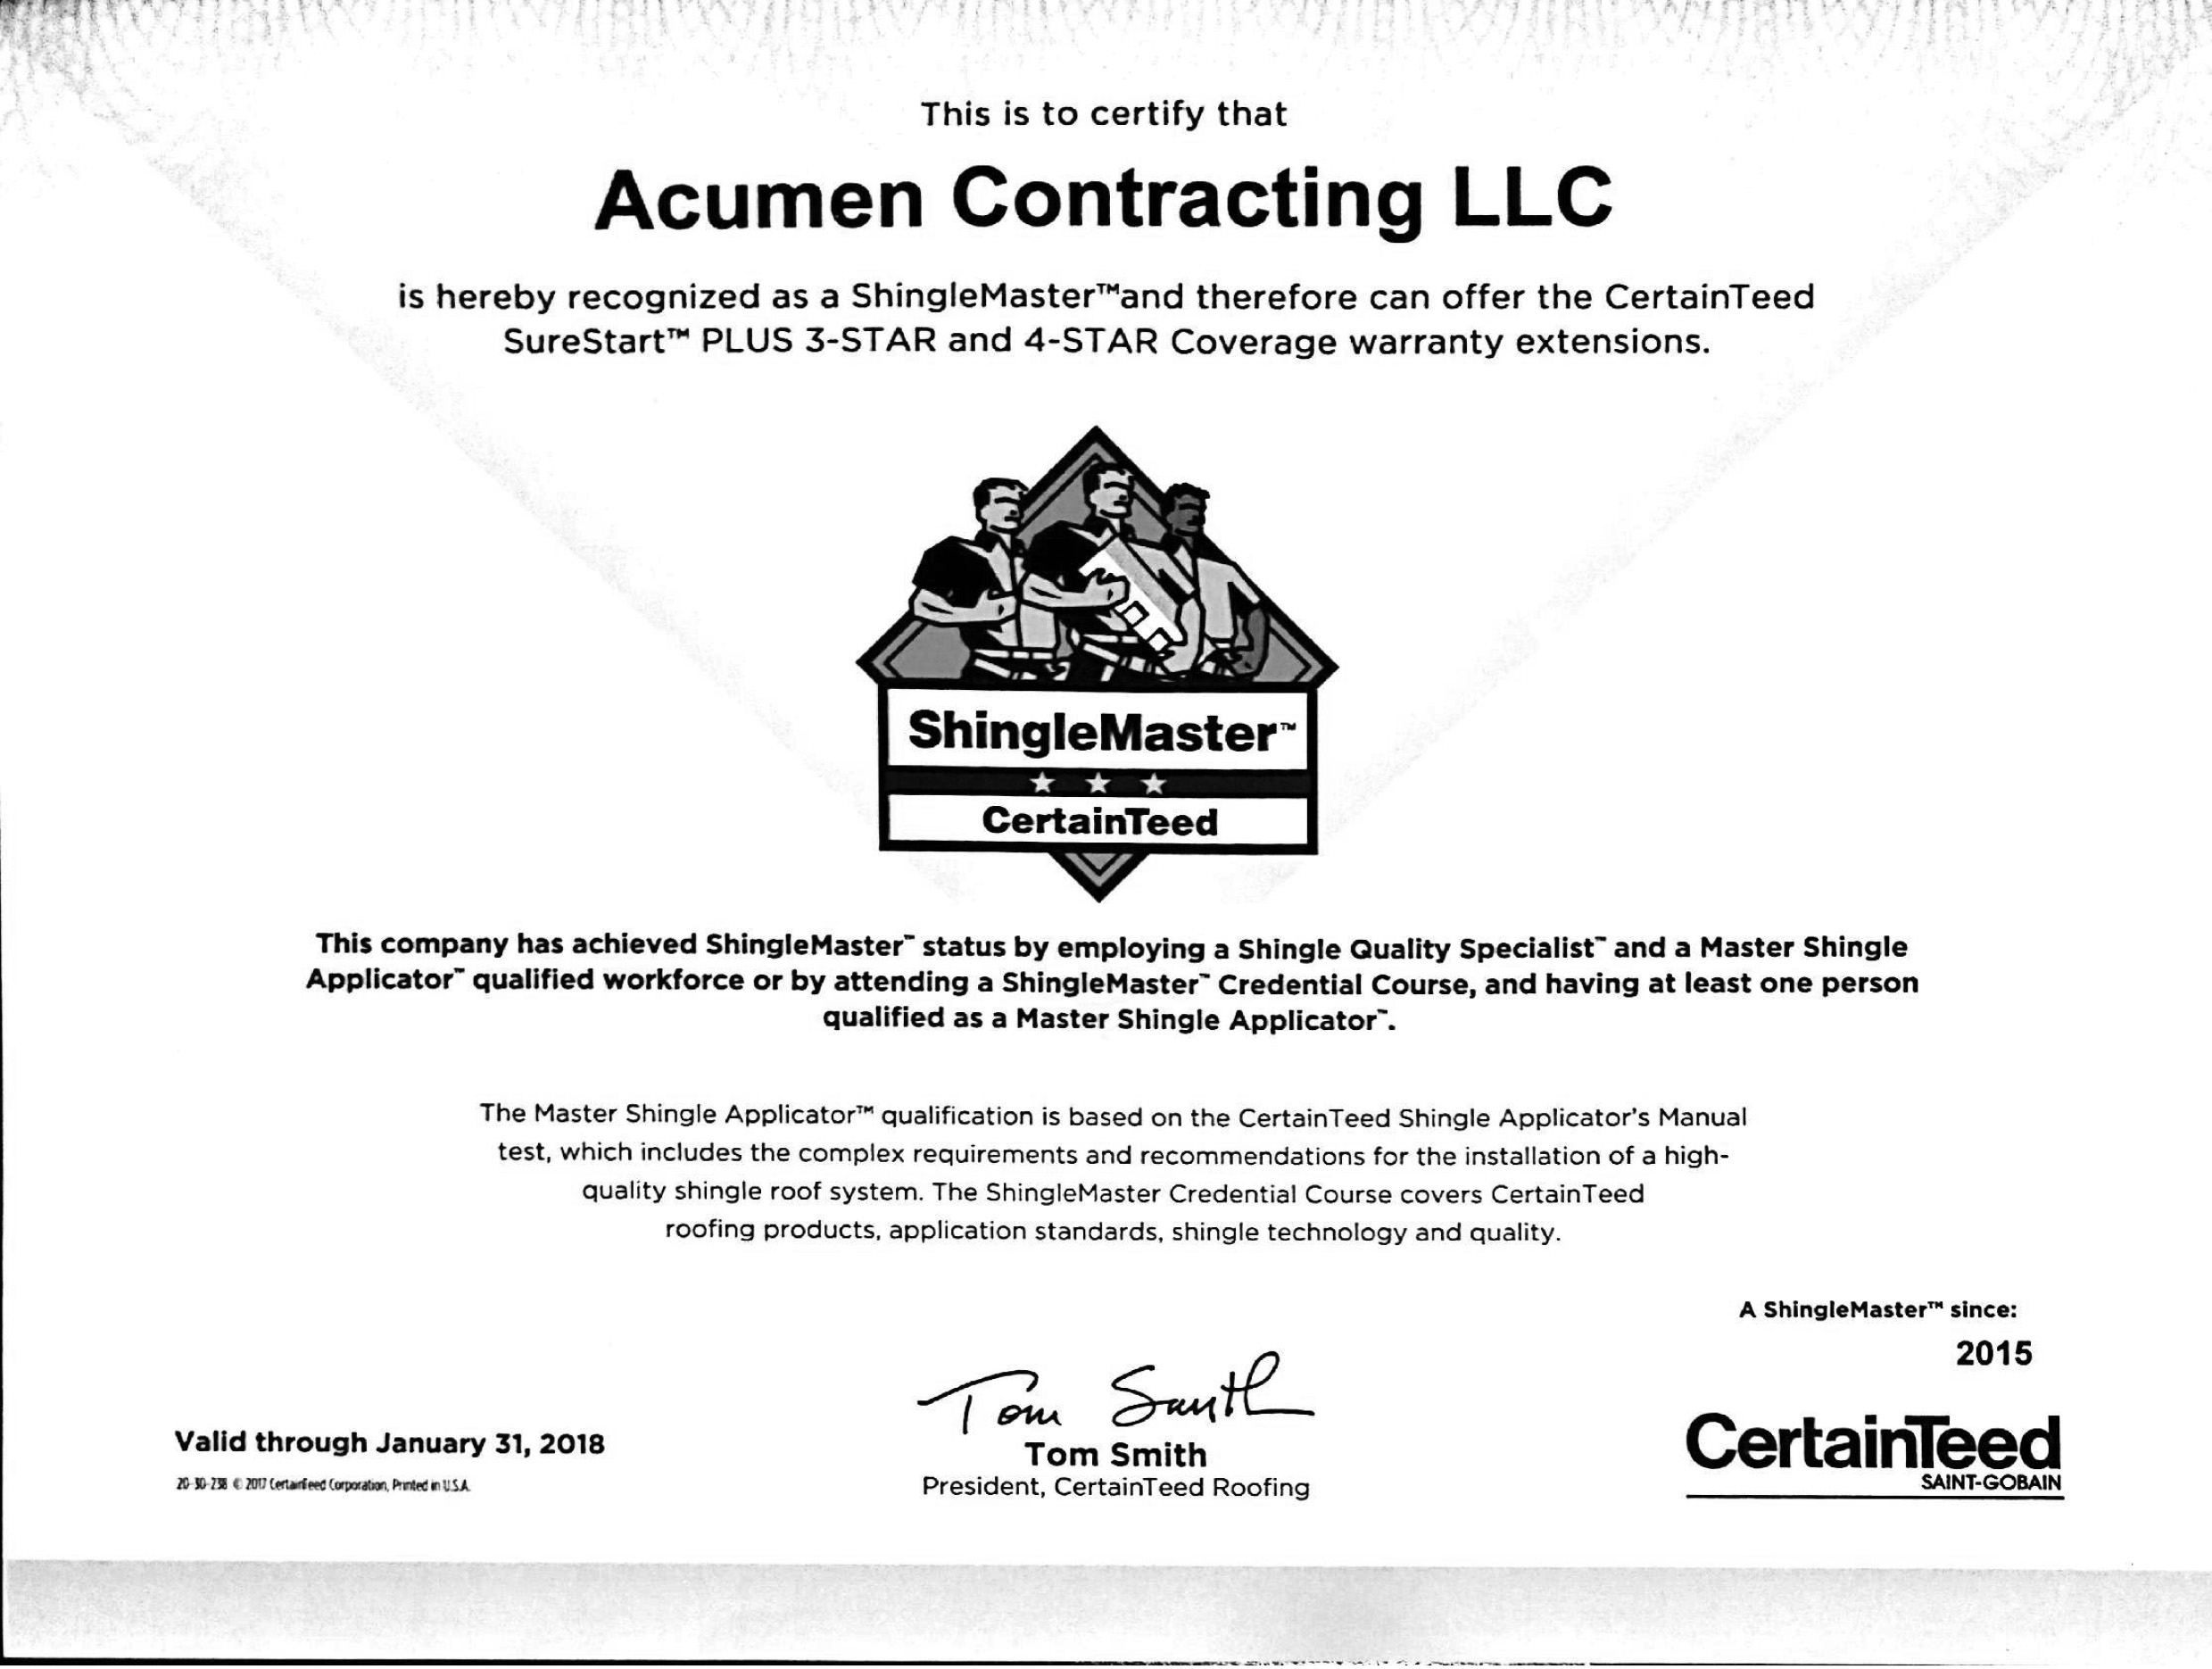 Acumen Contracting Certified roofing contractor